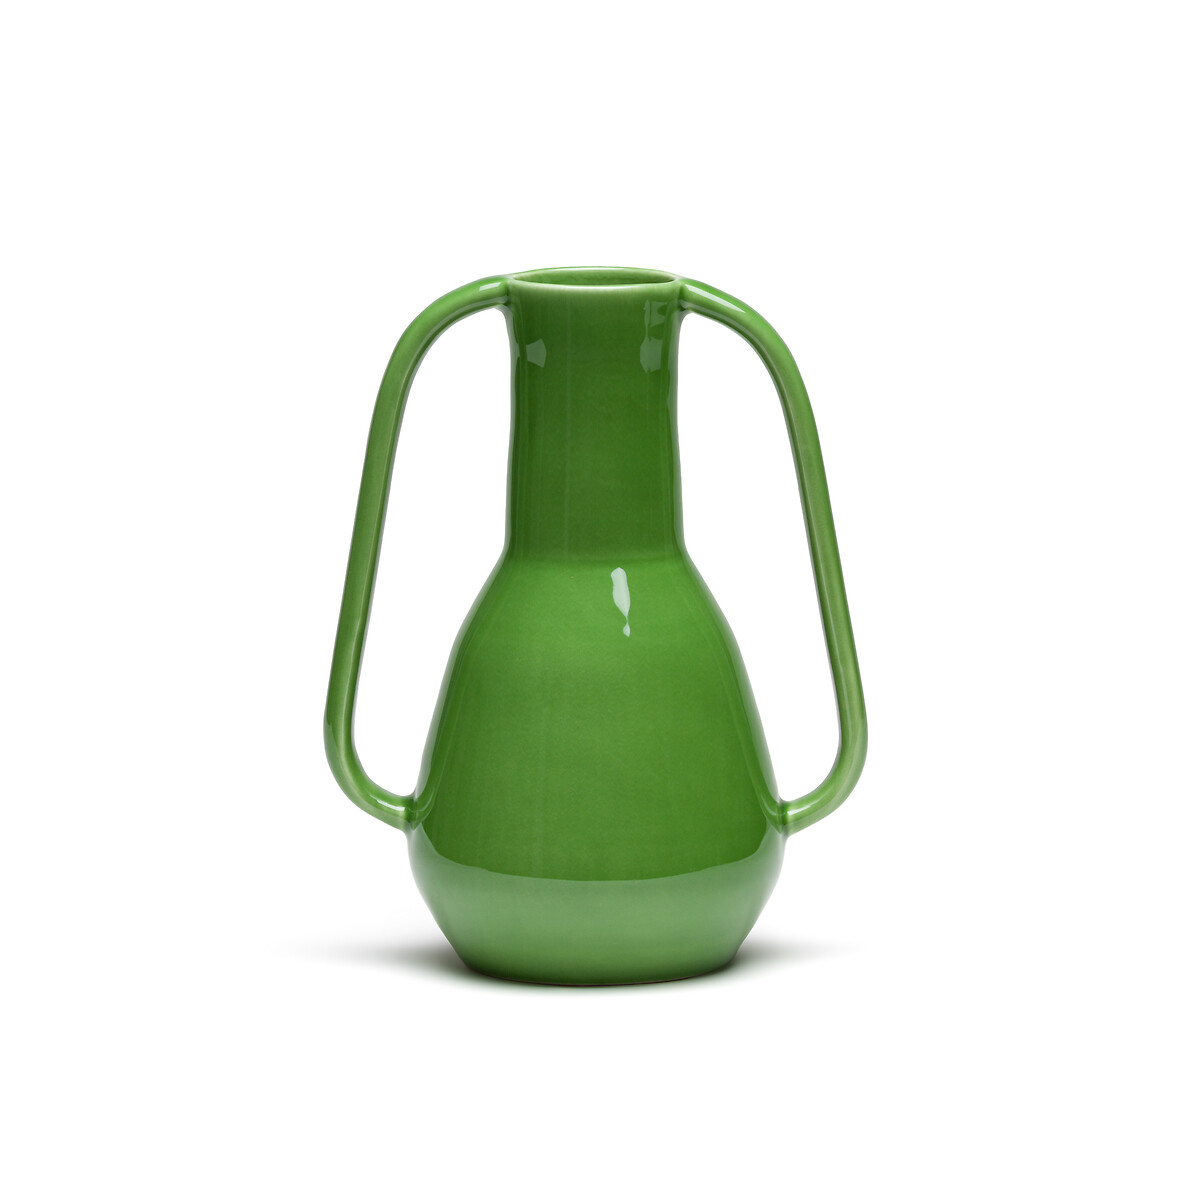 ваза из керамики рифленая в26 см liso единый размер серый Ваза из керамики В24 см Tivano единый размер зеленый